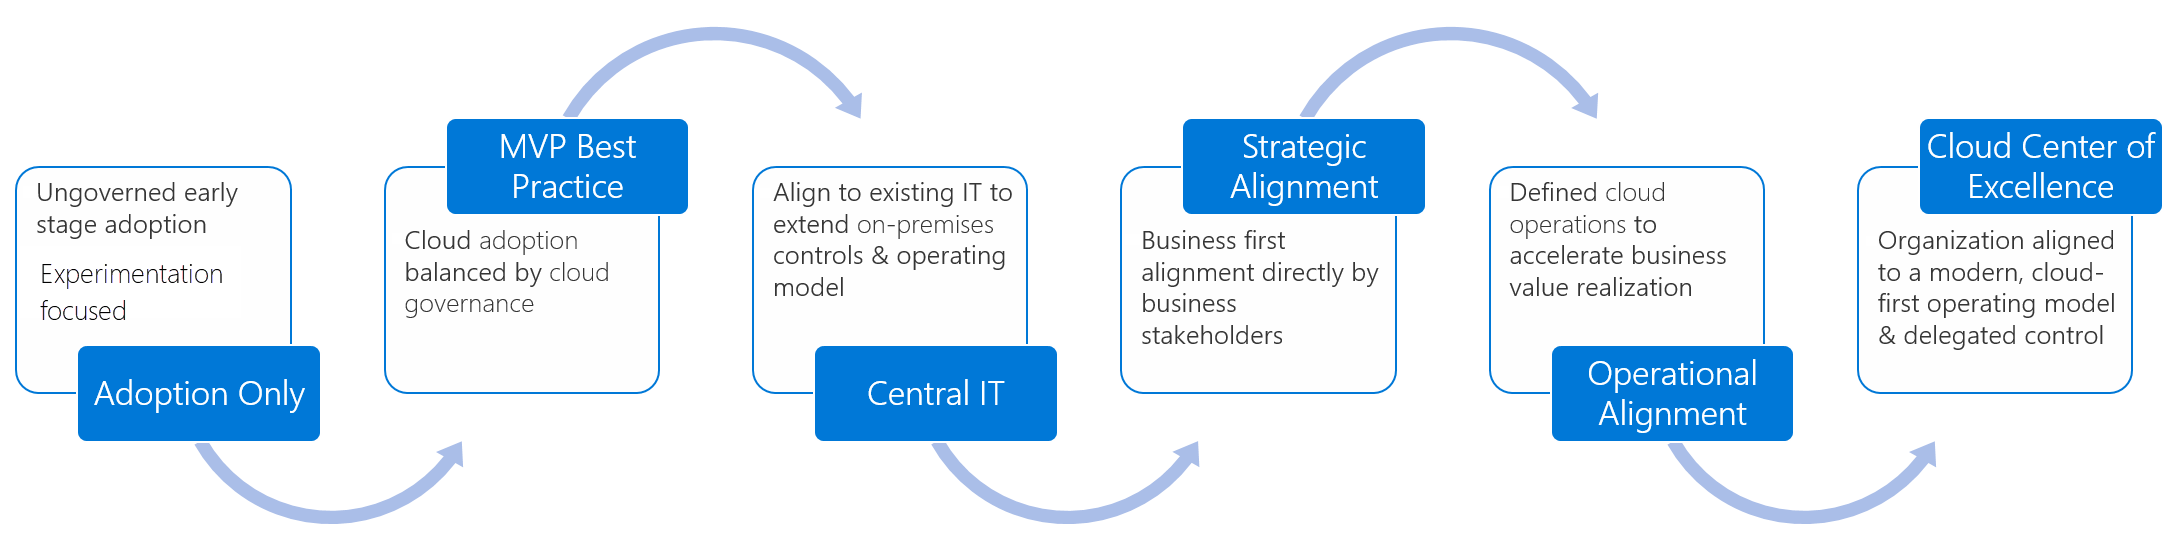 Схема: цикл зрелости организации.